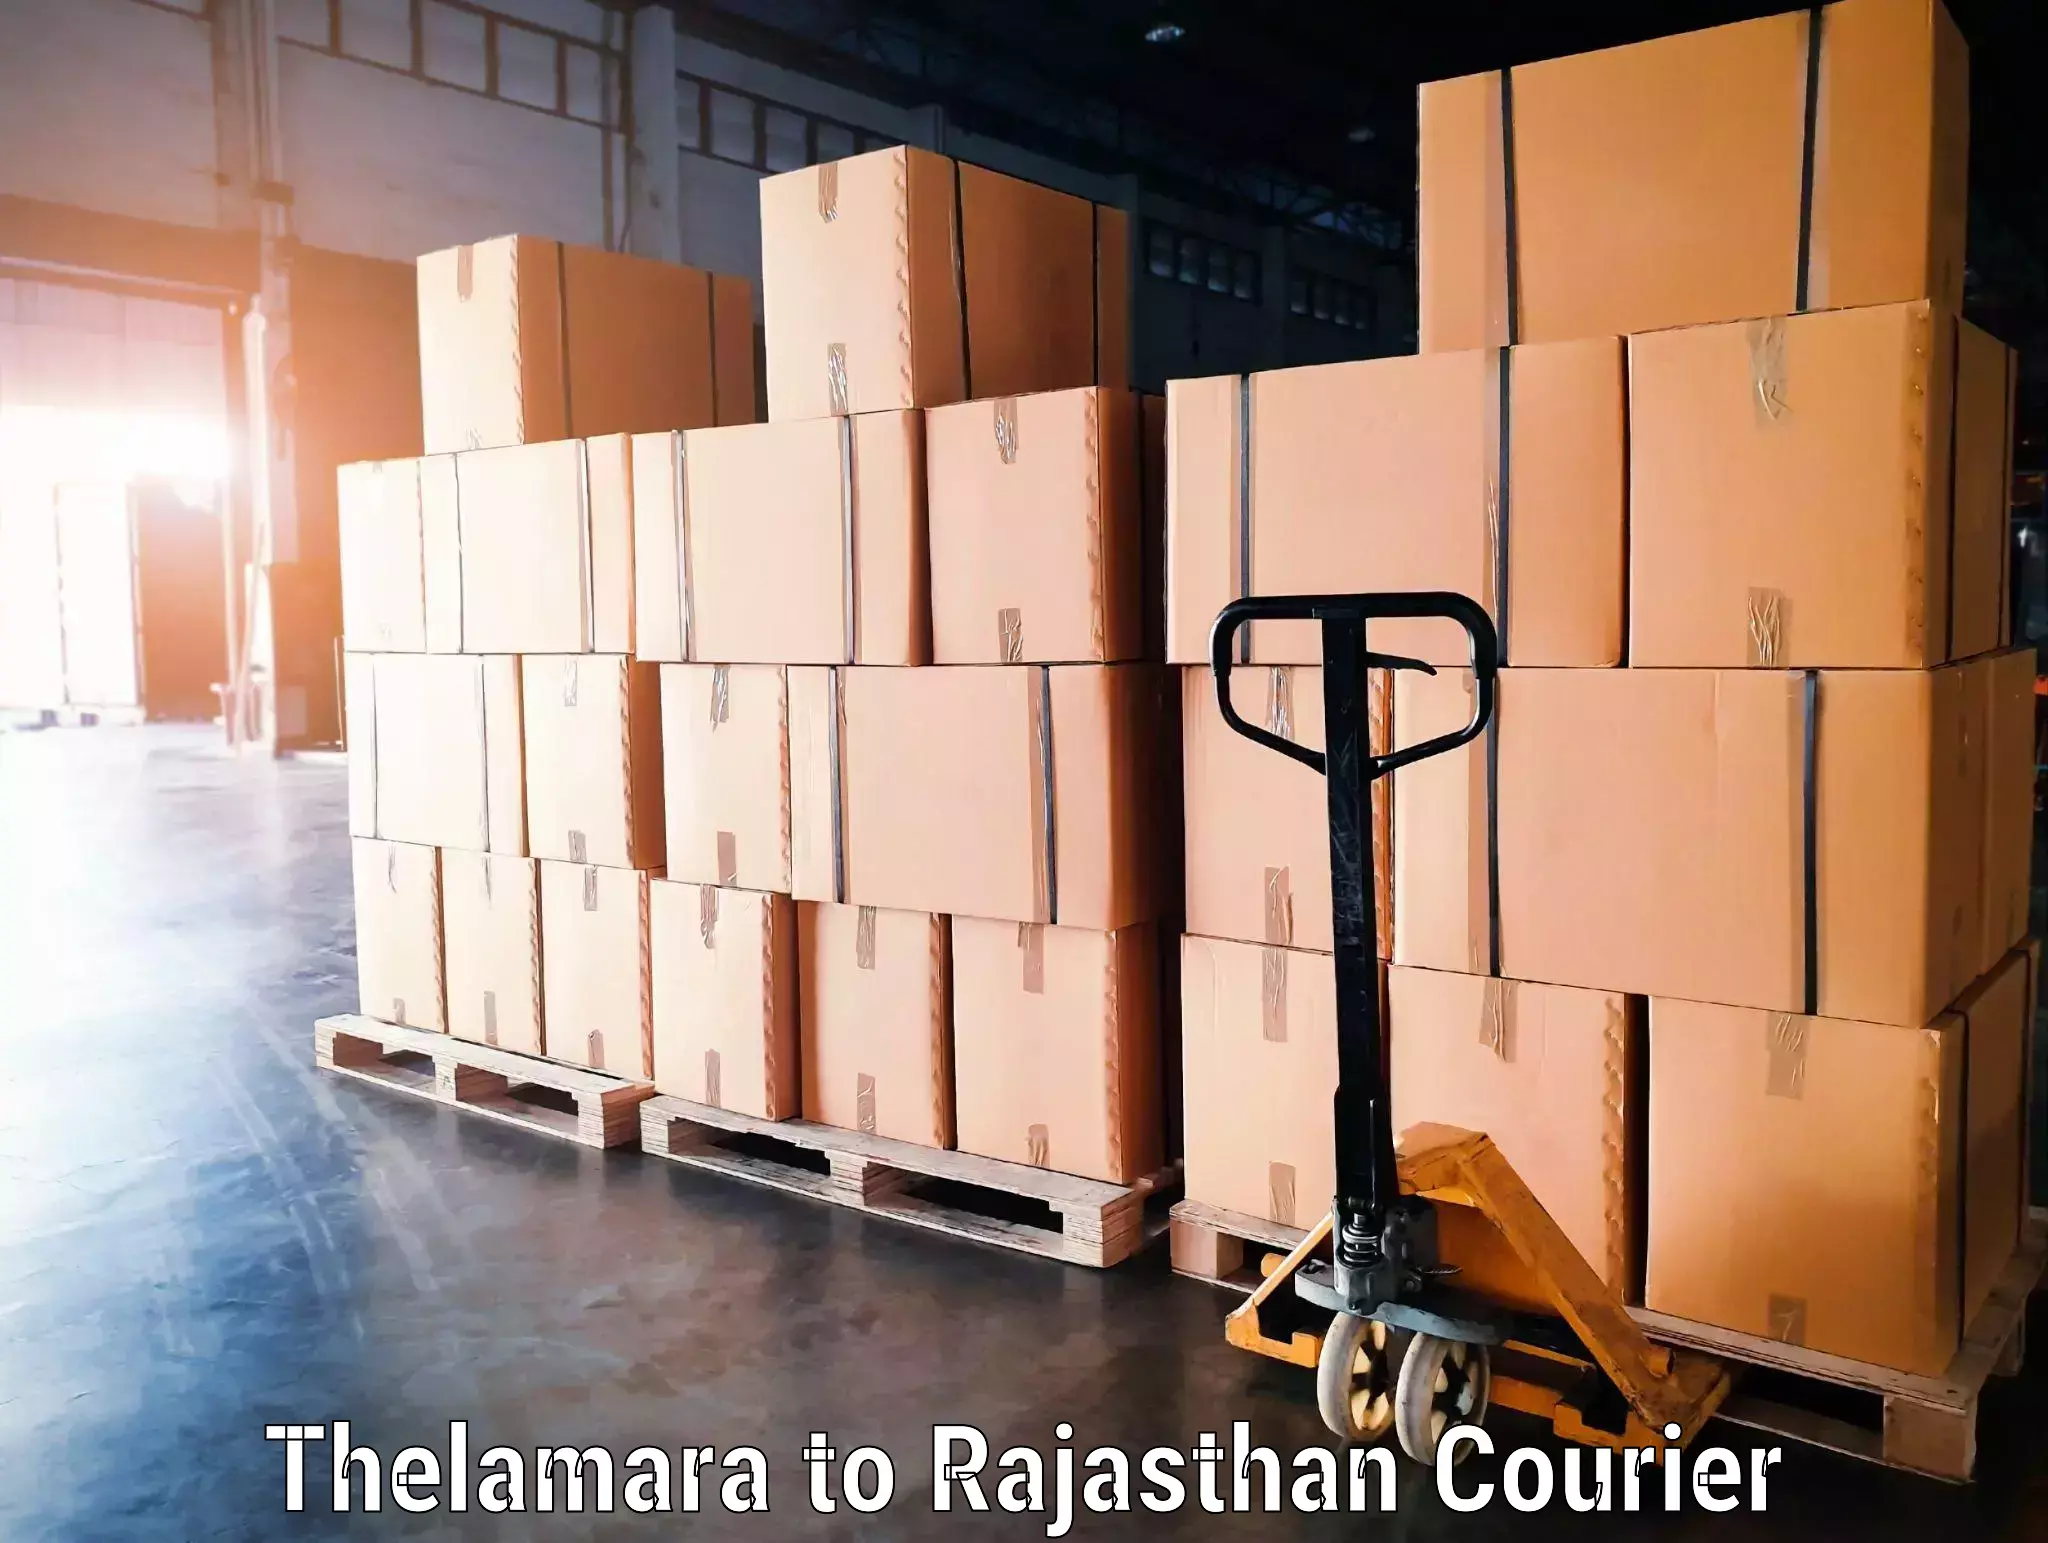 Baggage transport network Thelamara to Hanumangarh